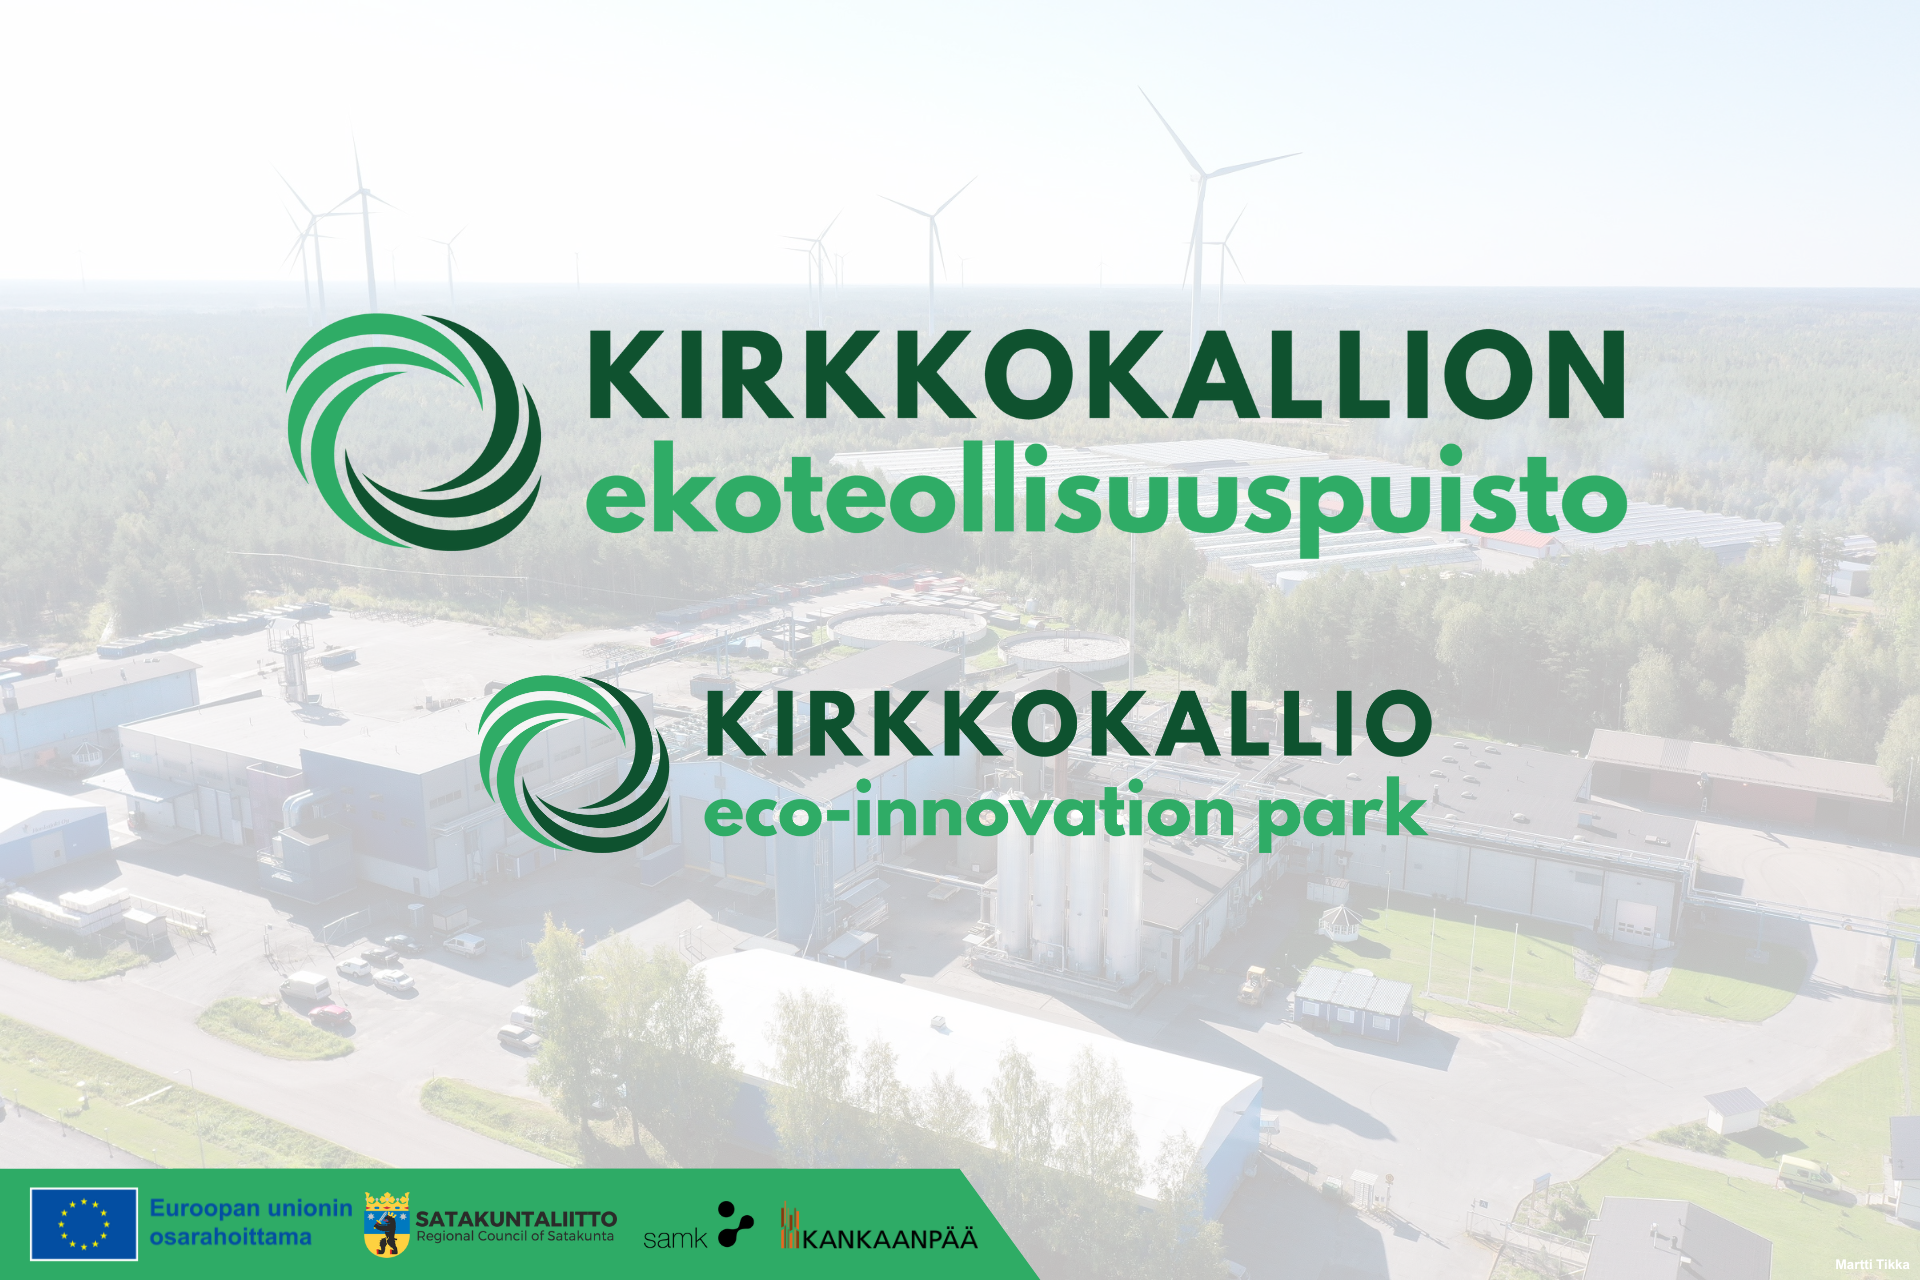 Kirkkokallion ekoteollisuuspuisto, Kirkkokallio eco-innovation park, taustakuvana tuulivoimapuisto, EU-lippulogo Euroopan unionin osarahoittama, Satakuntaliiton, SAMKin ja Kankaanpään logot.